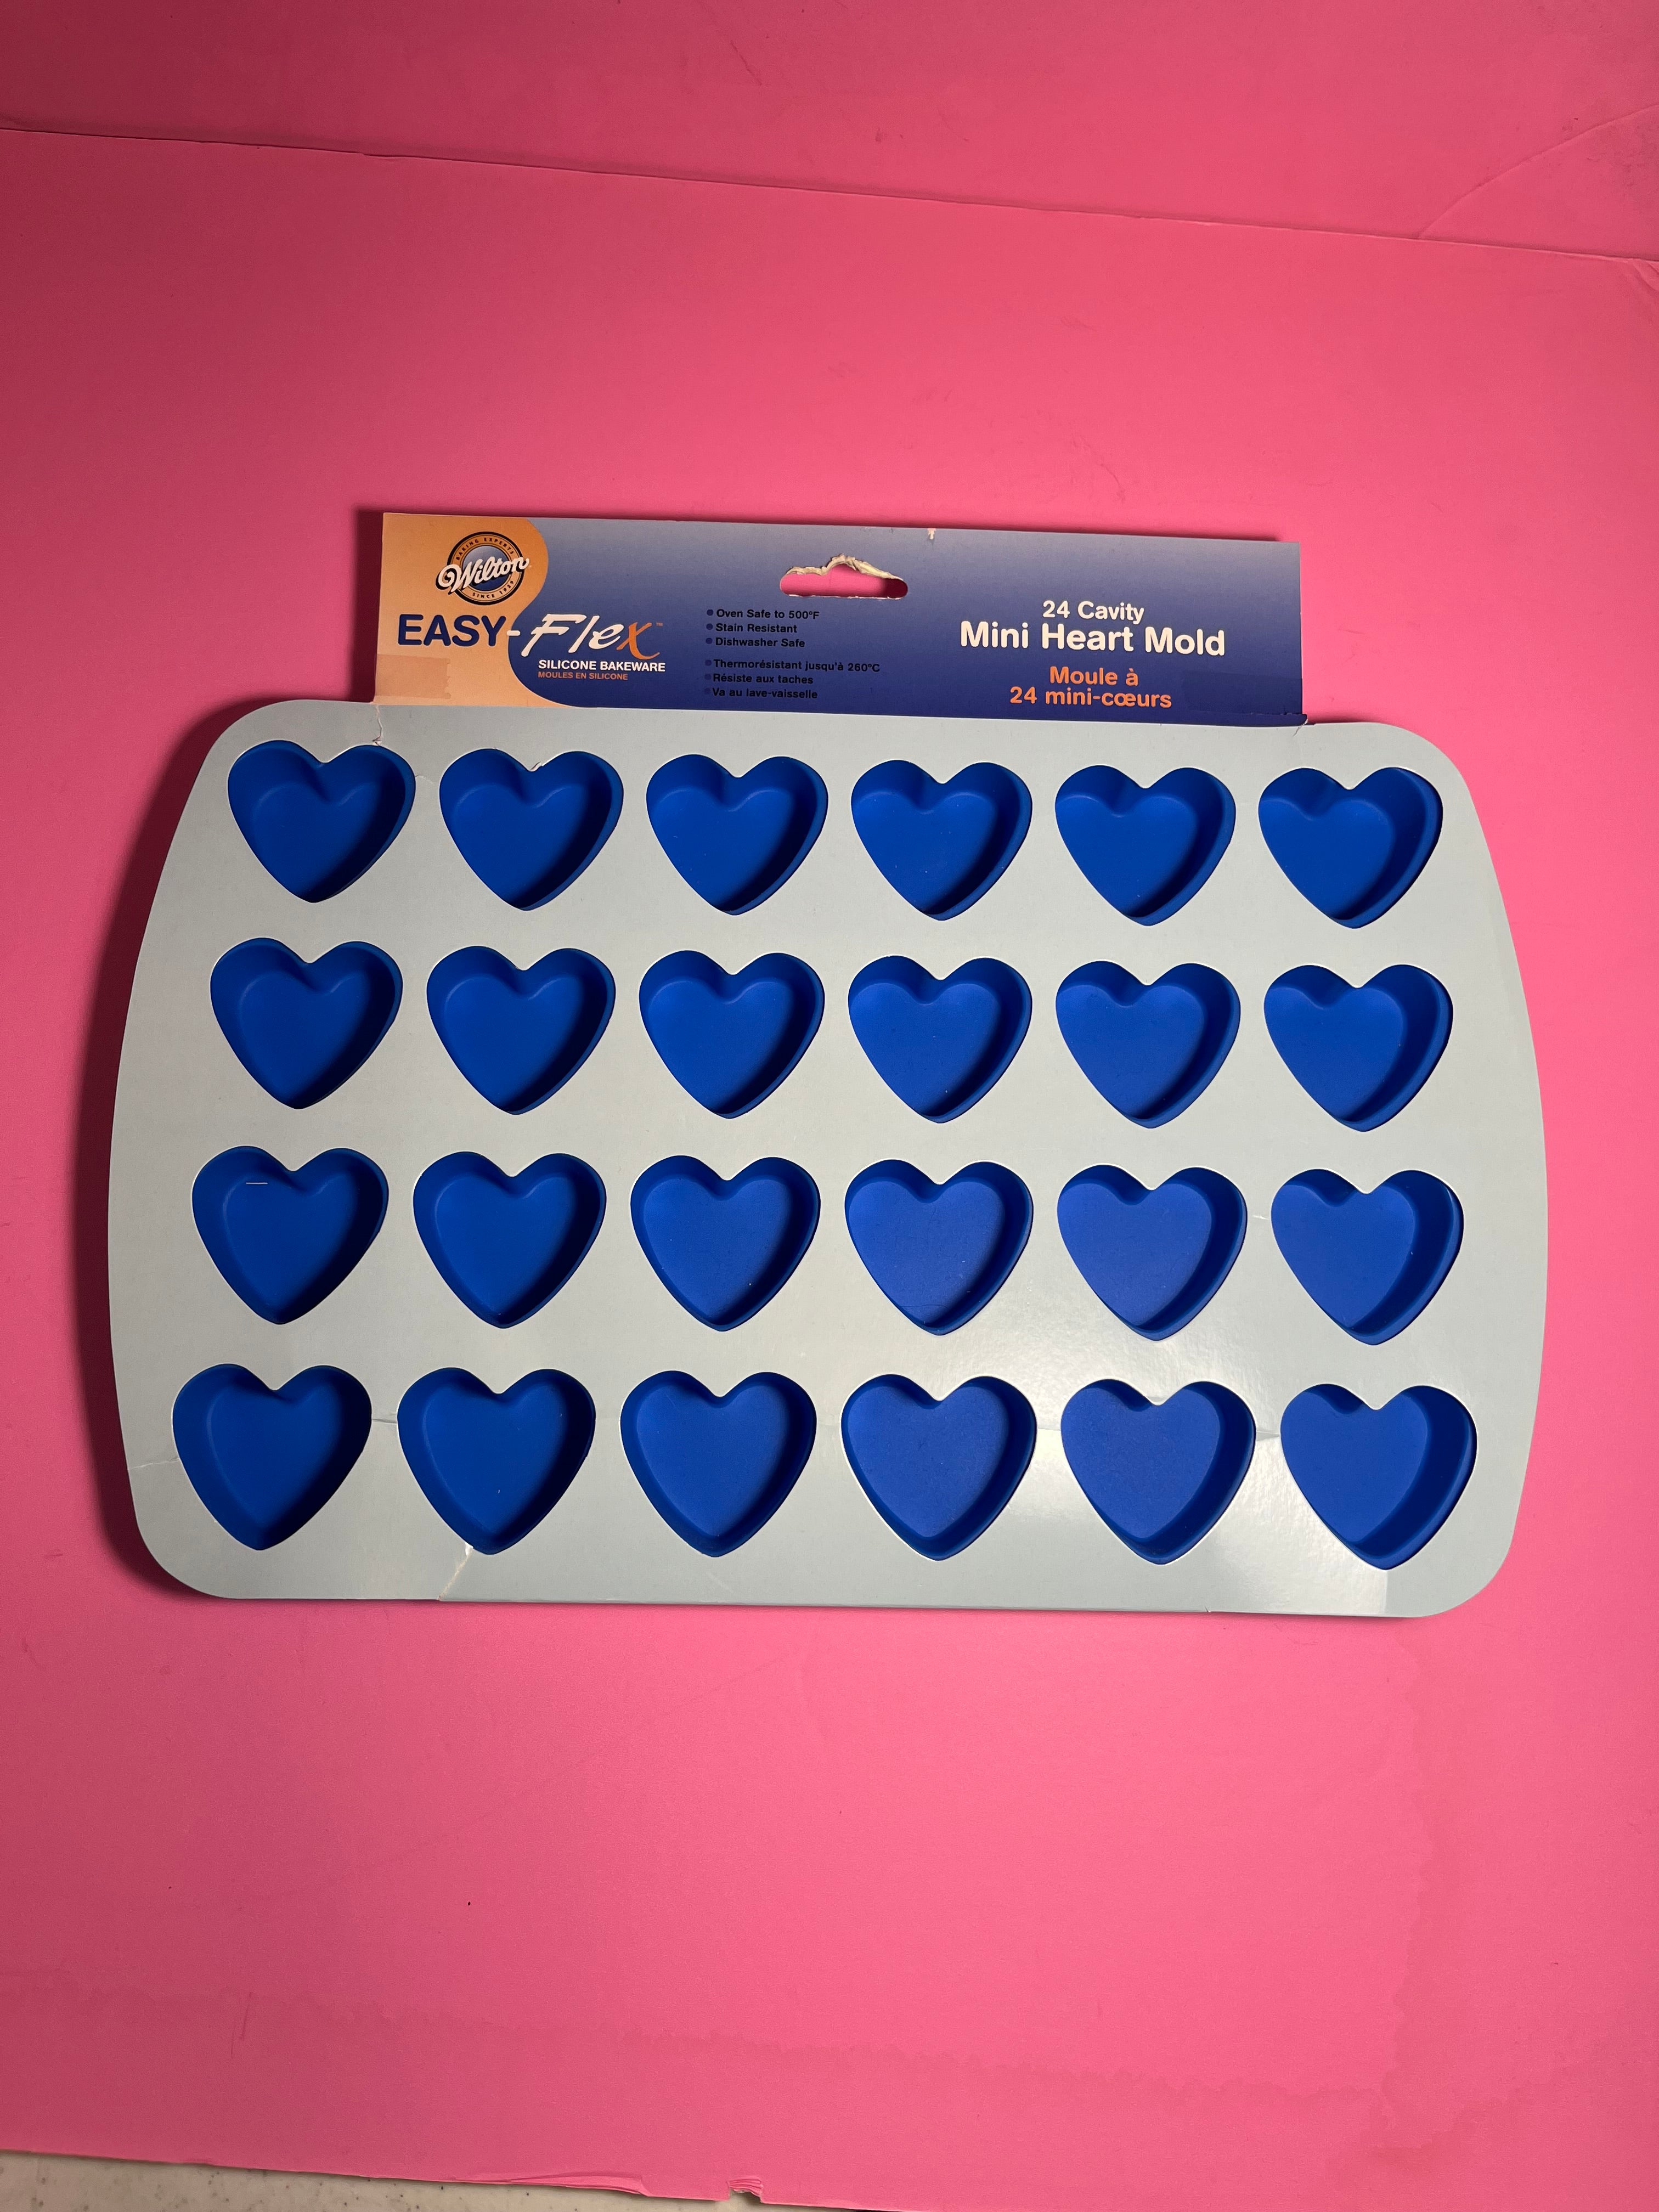 Wilton Easy-Flex Silicone Bakeware 24-Cavity Mini Heart Mold